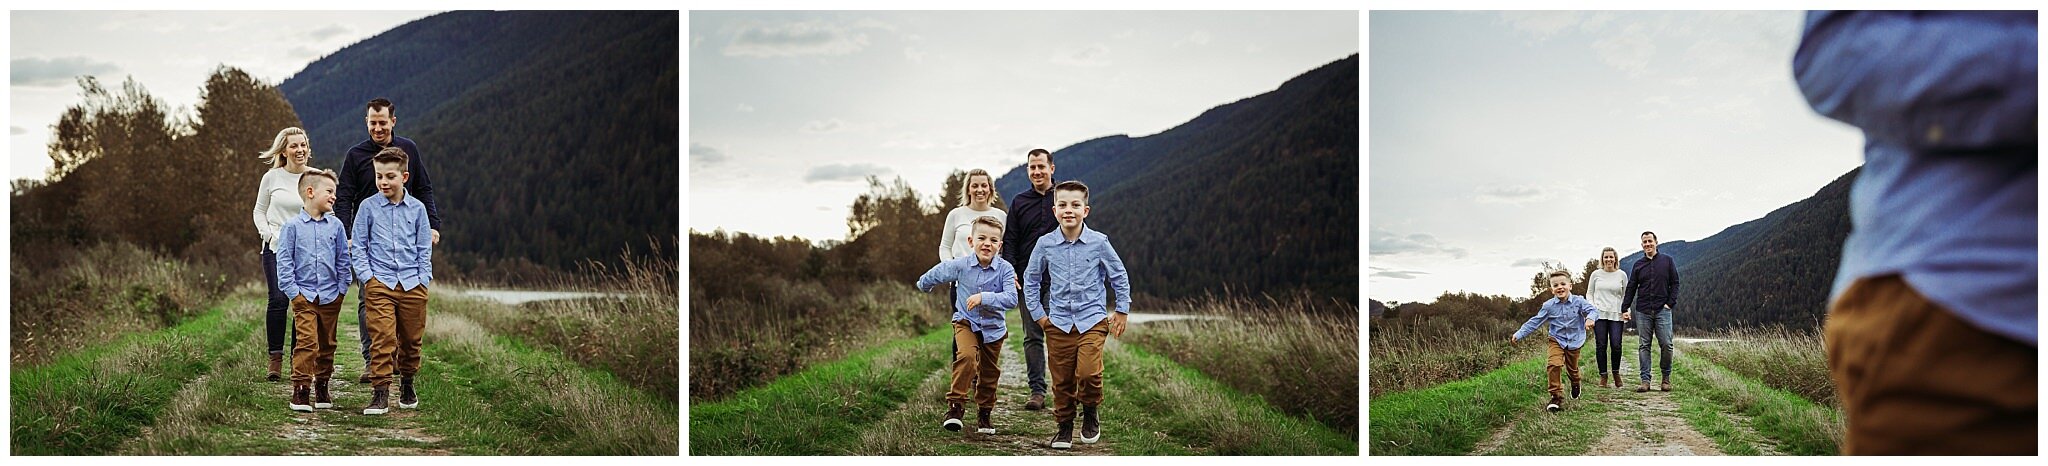 Extended-Family-Photographer-Abbotsford-Fraser-Valley (1).jpg